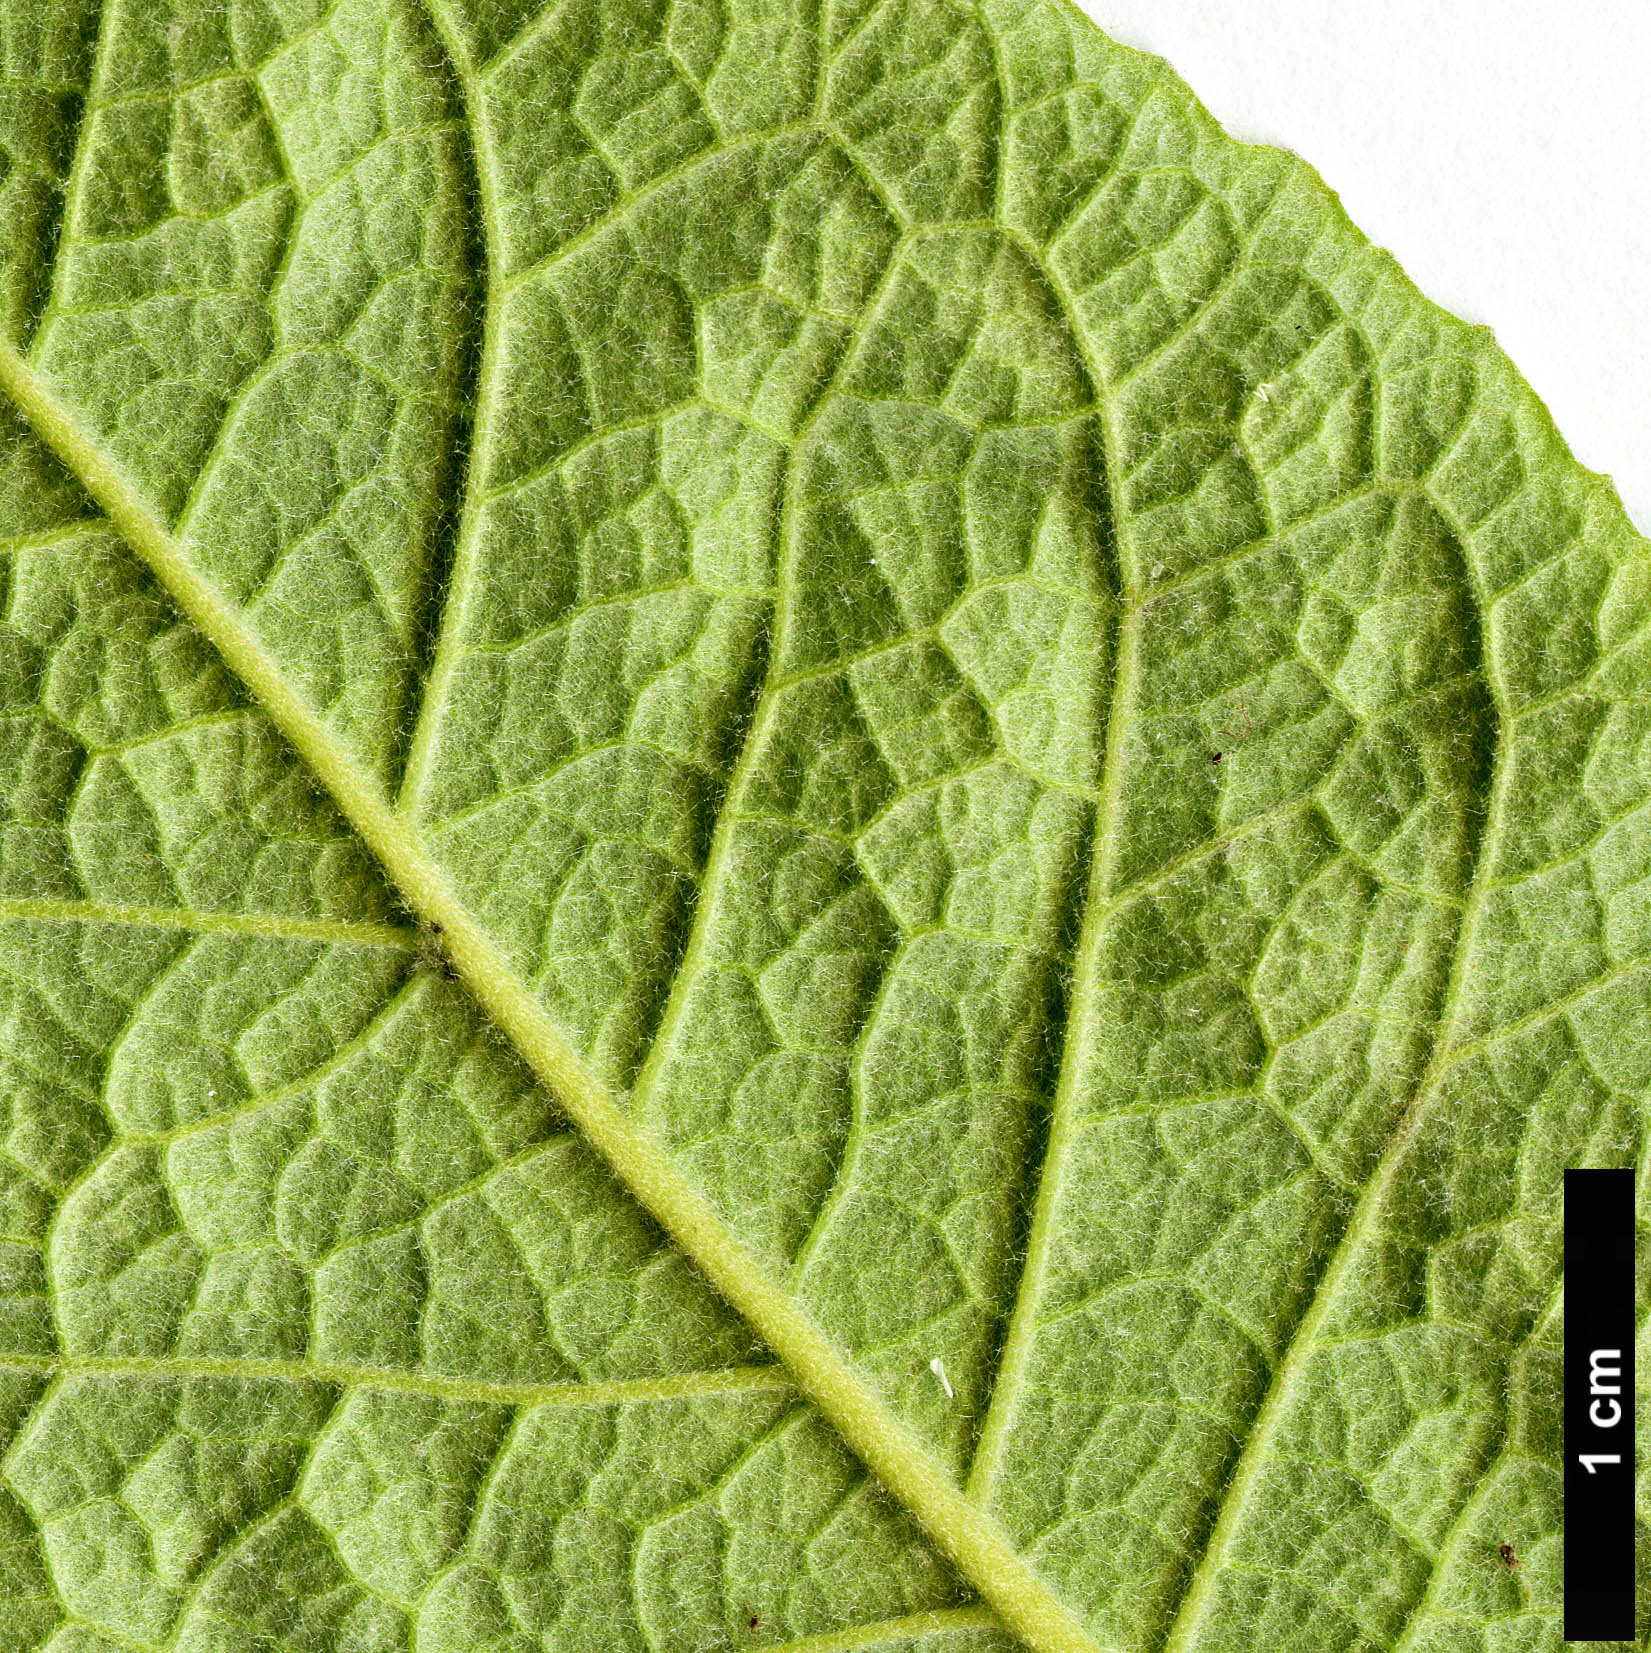 High resolution image: Family: Scrophulariaceae - Genus: Buddleja - Taxon: officinalis